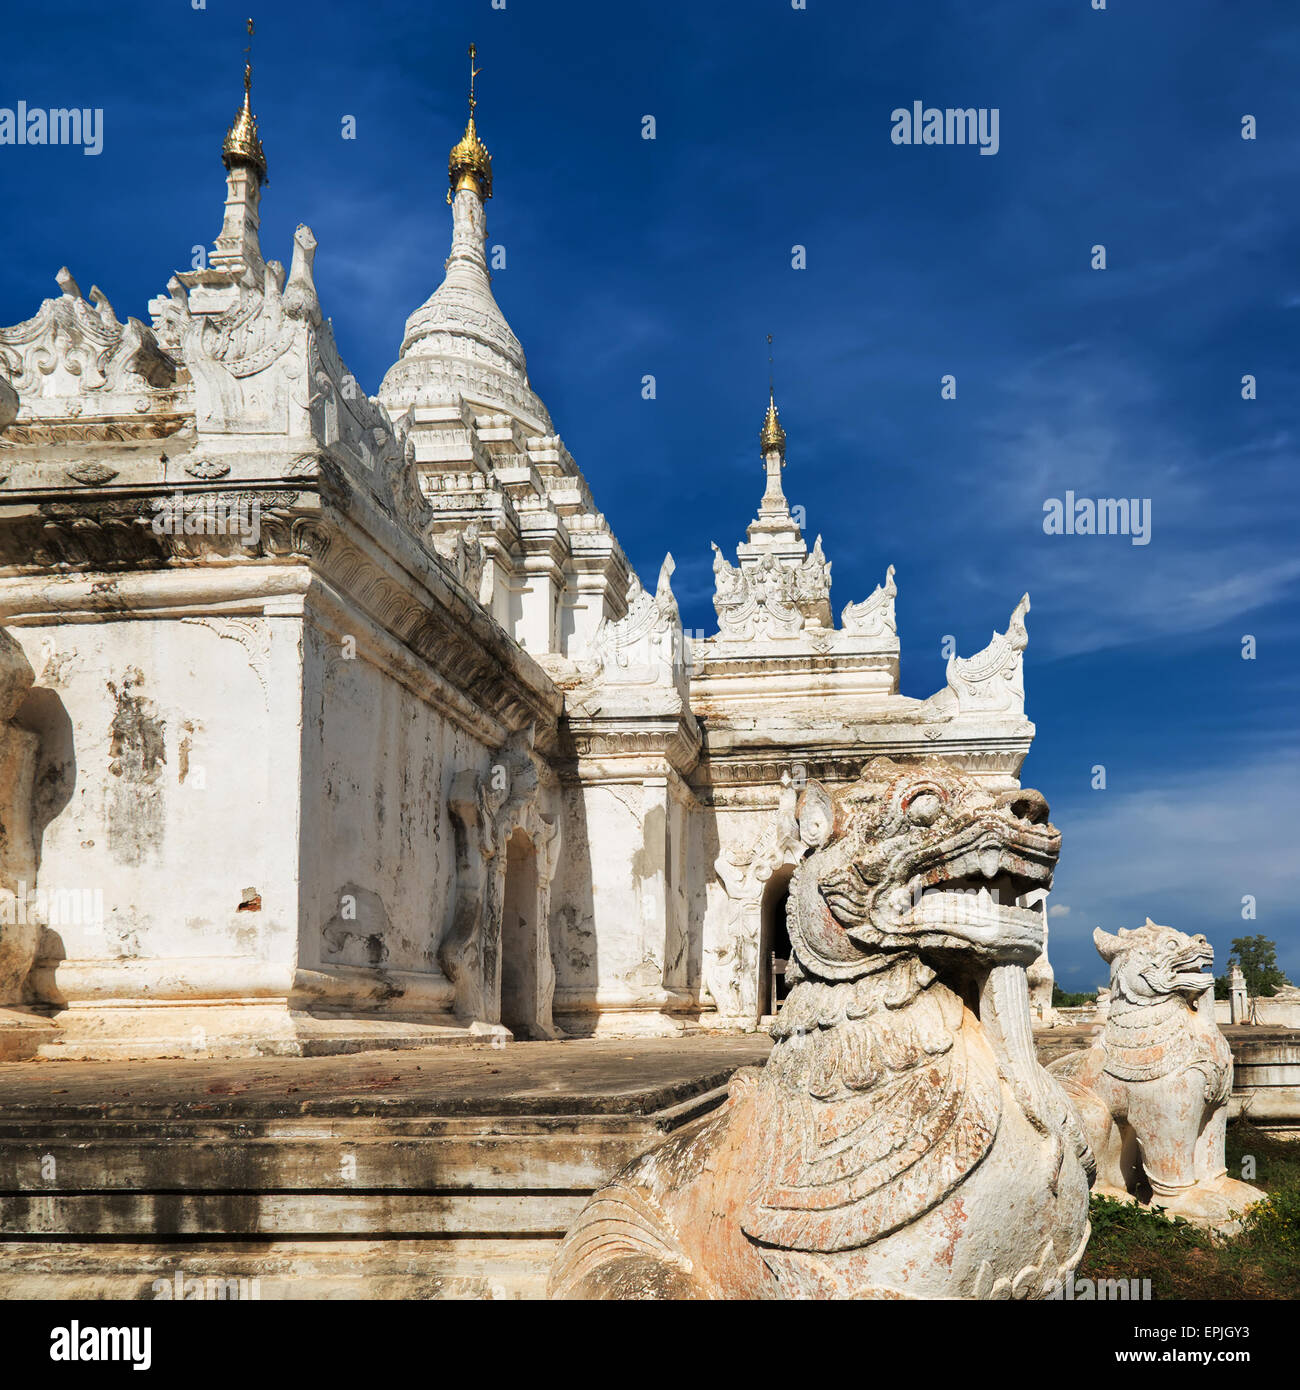 La Pagode blanche à Inwa ville ancienne avec des statues de lions guardian. L'architecture incroyable de vieux temples bouddhistes. Myanmar (Birmanie) tra Banque D'Images